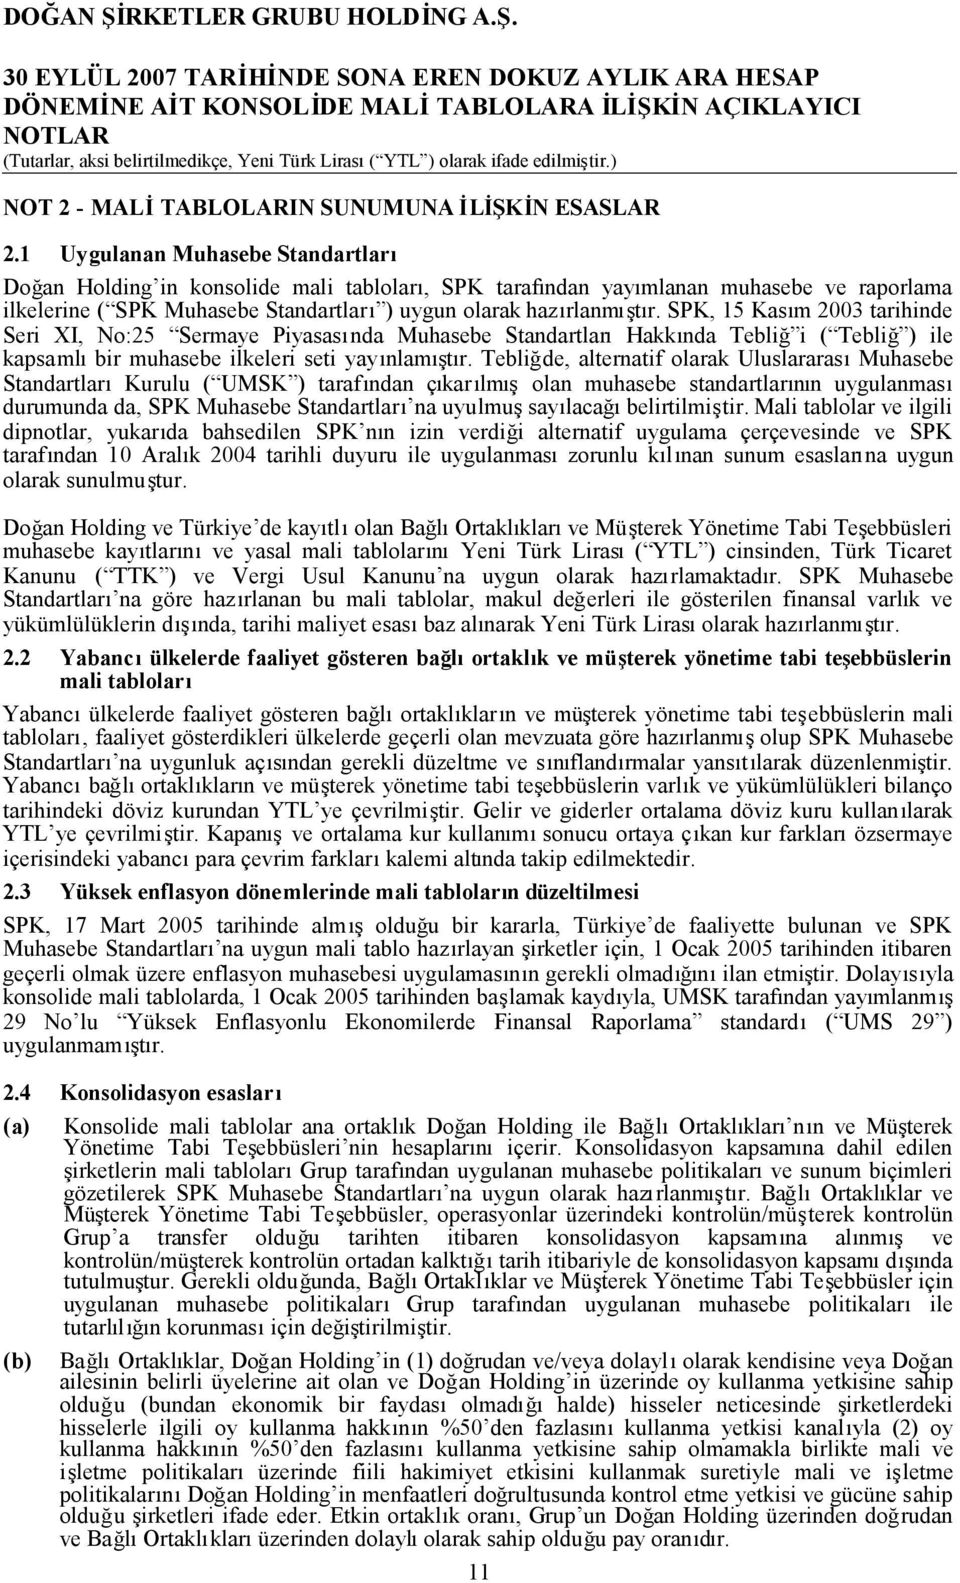 SPK, 15 Kasım 2003 tarihinde Seri XI, No:25 Sermaye Piyasasında Muhasebe StandartlarıHakkında Tebliğ i ( Tebliğ ) ile kapsamlıbir muhasebe ilkeleri seti yayınlamıştır.